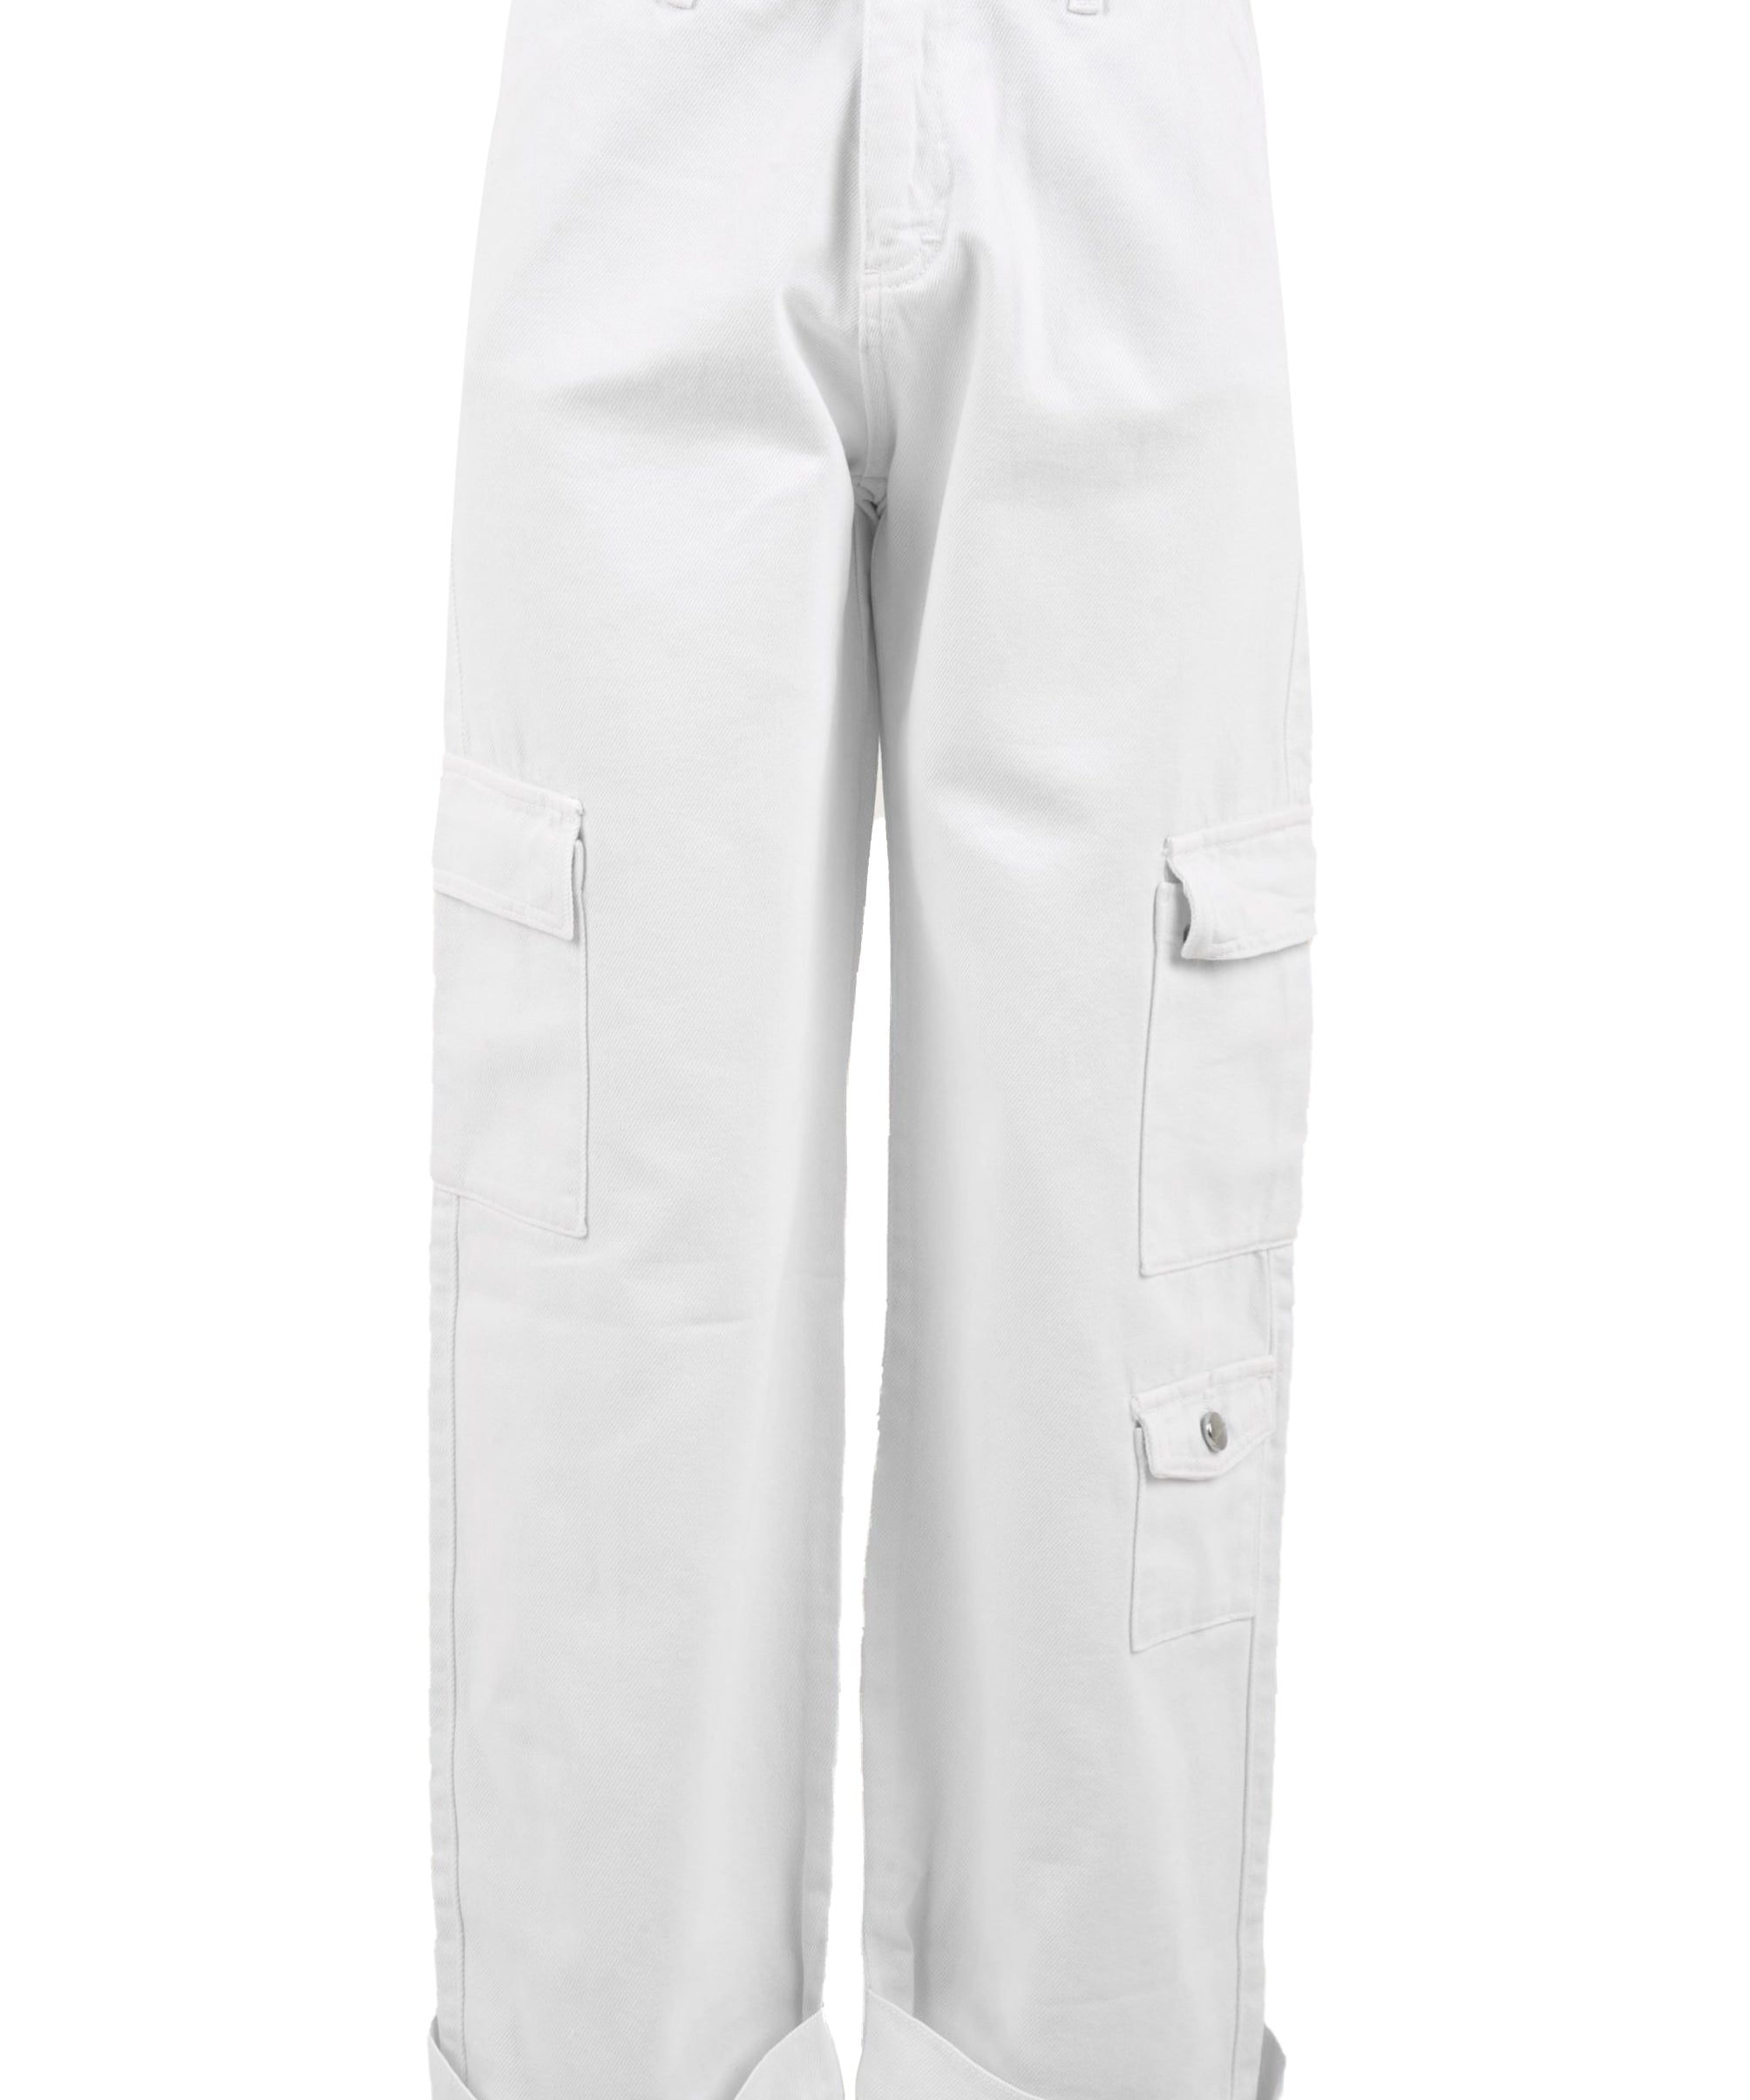 Pantalone donna bianco stile cargo con tasche